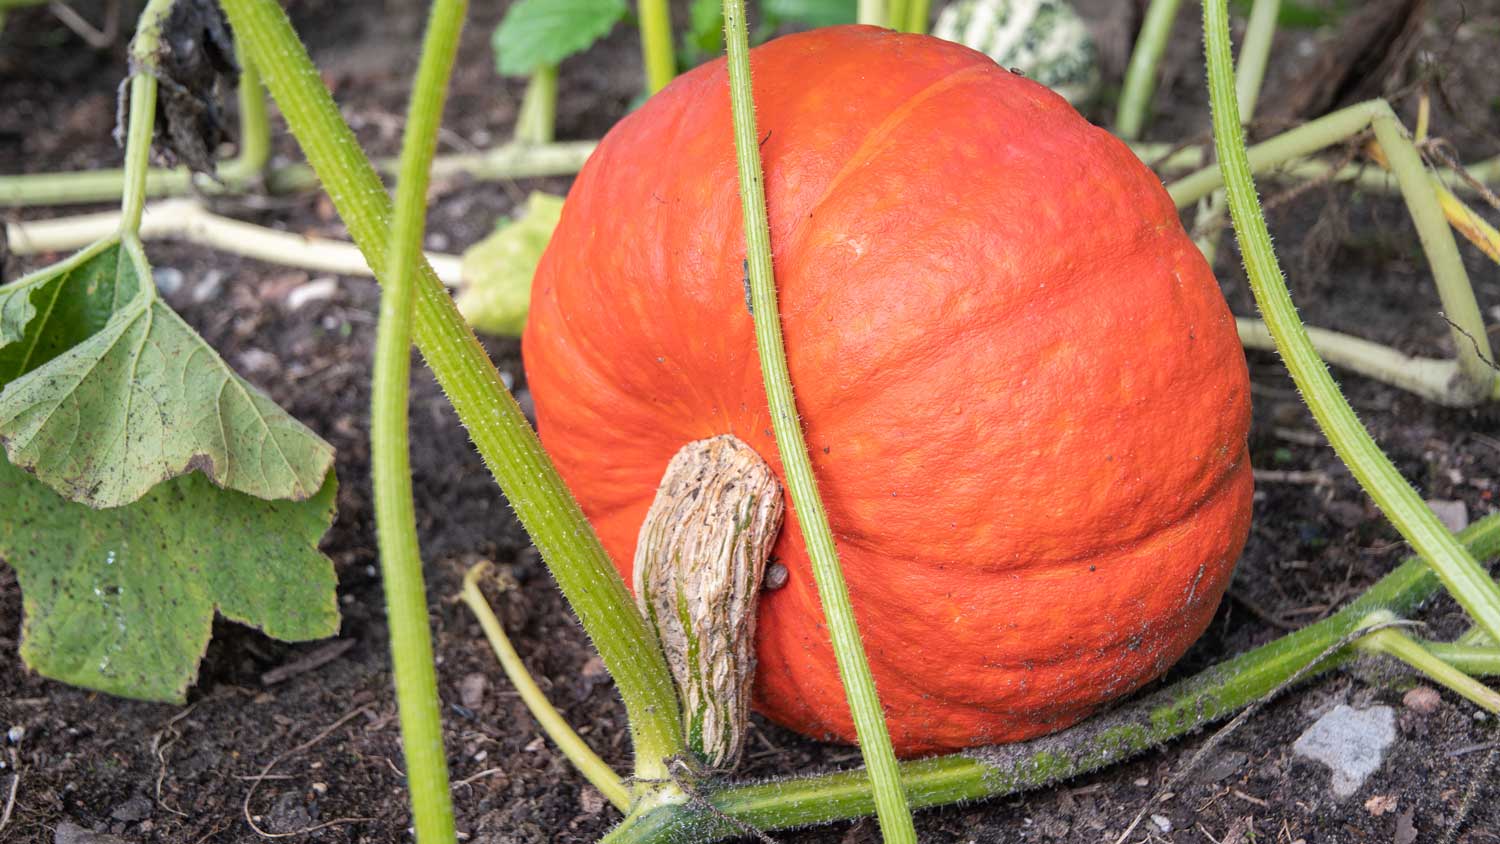 Pumpkin on the vine in a field.